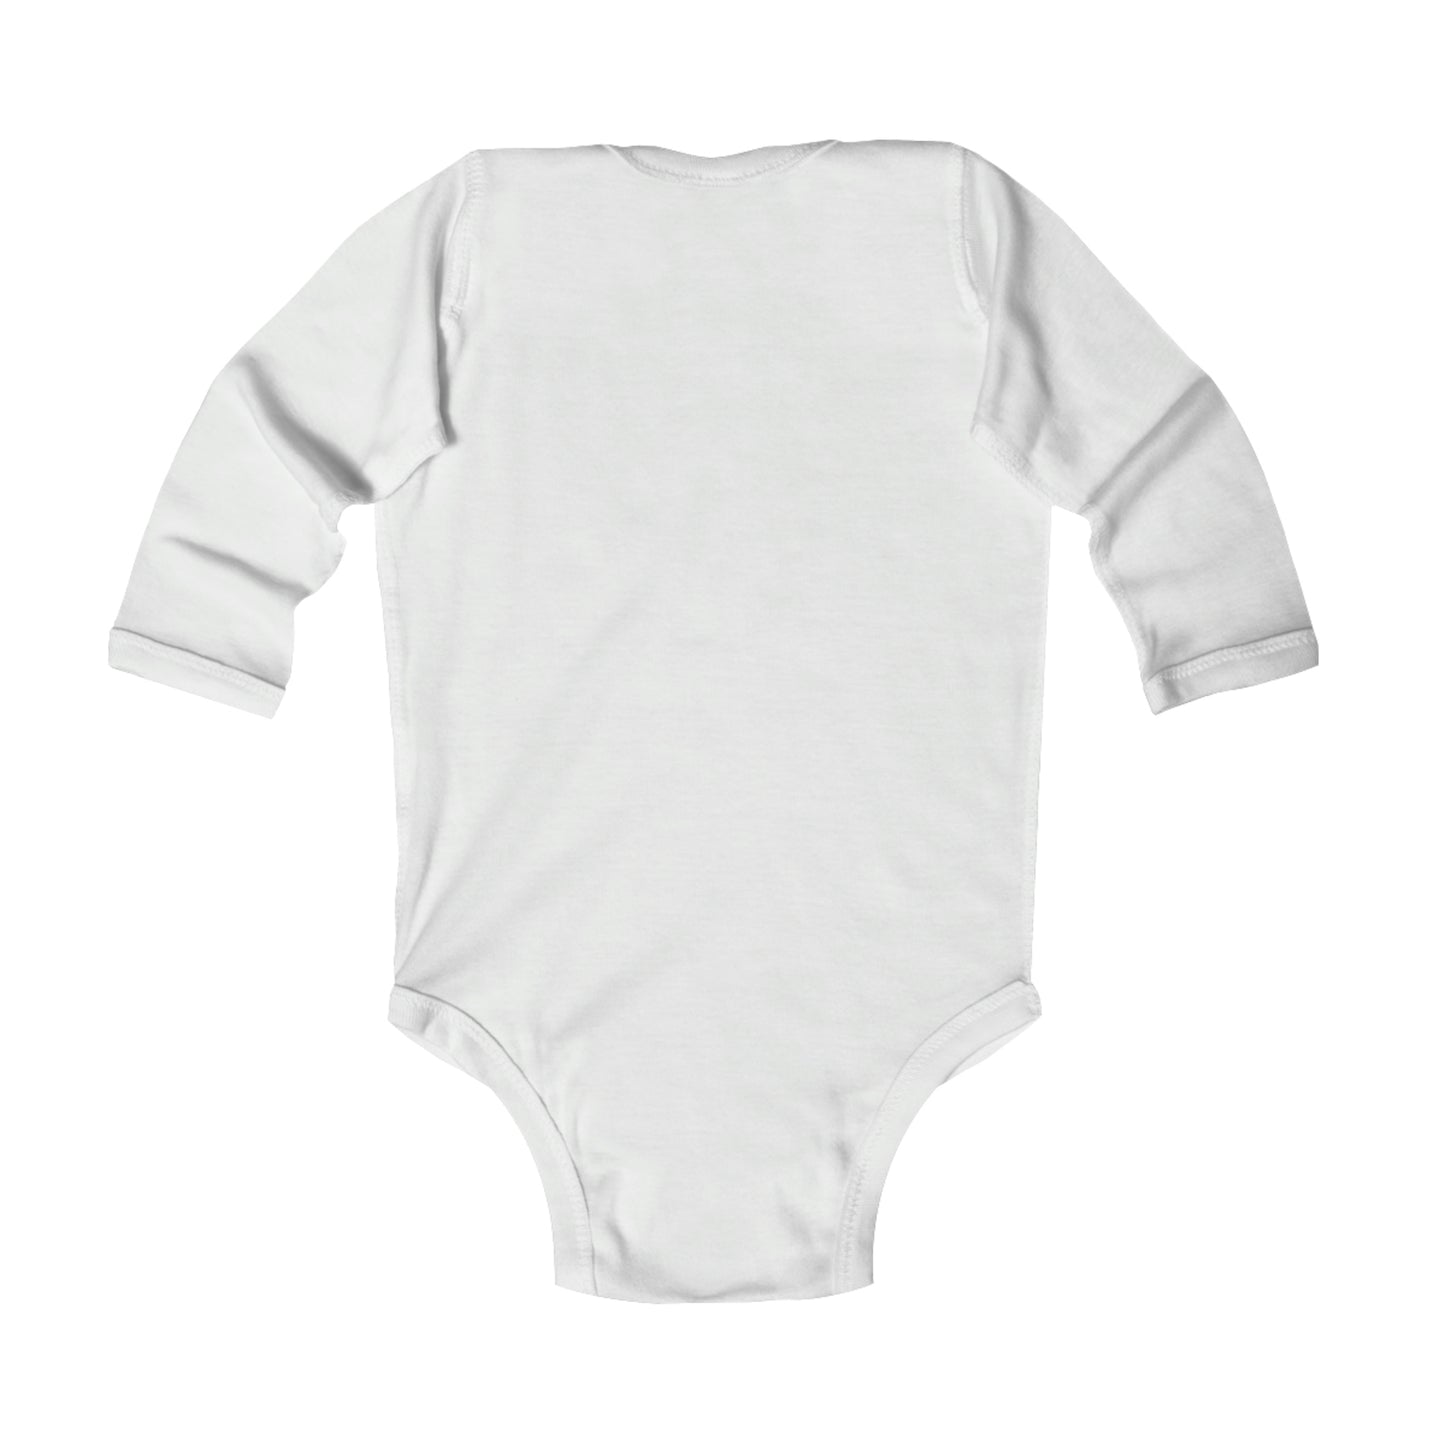 The landing World Infant Long Sleeve Bodysuit